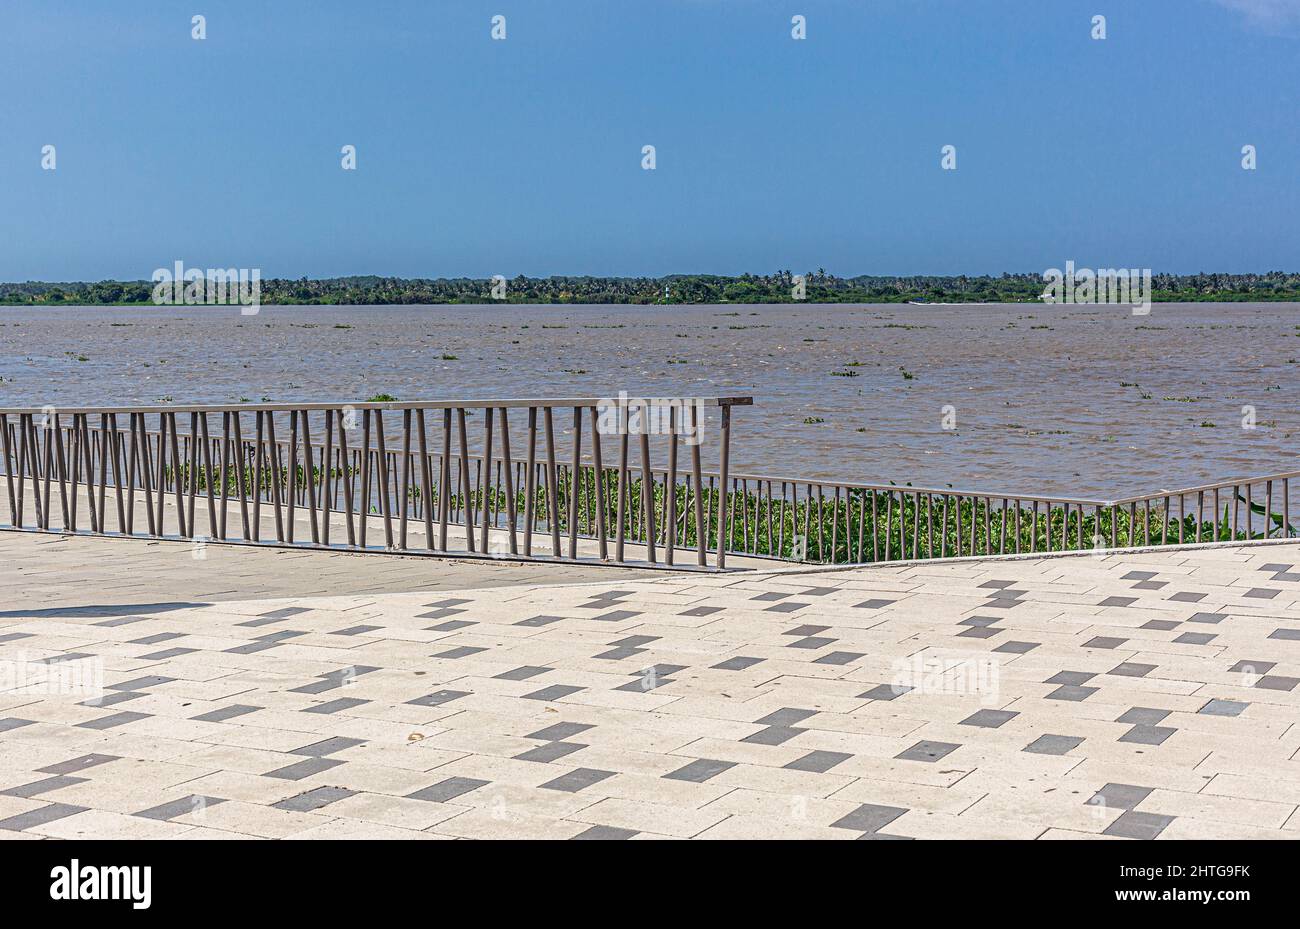 Malecón del Río Magdalena, Barranquilla, Colombia. Stock Photo